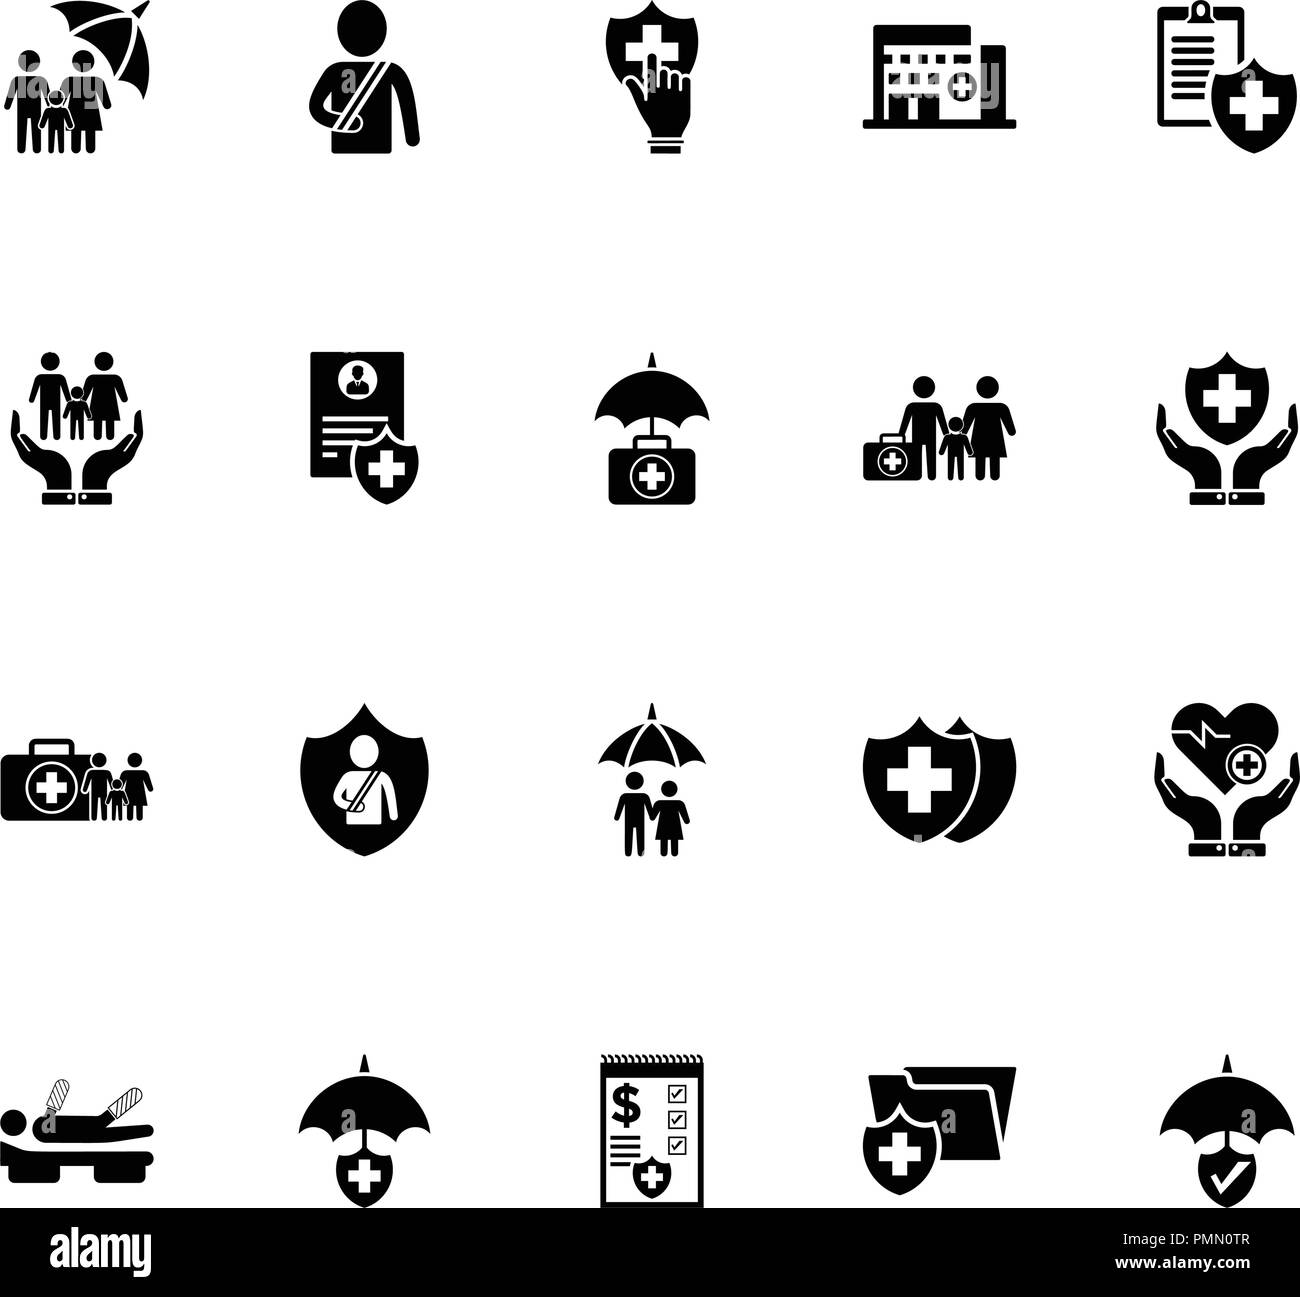 Krankenversicherung Icons Set - Schwarz Stock Vektor